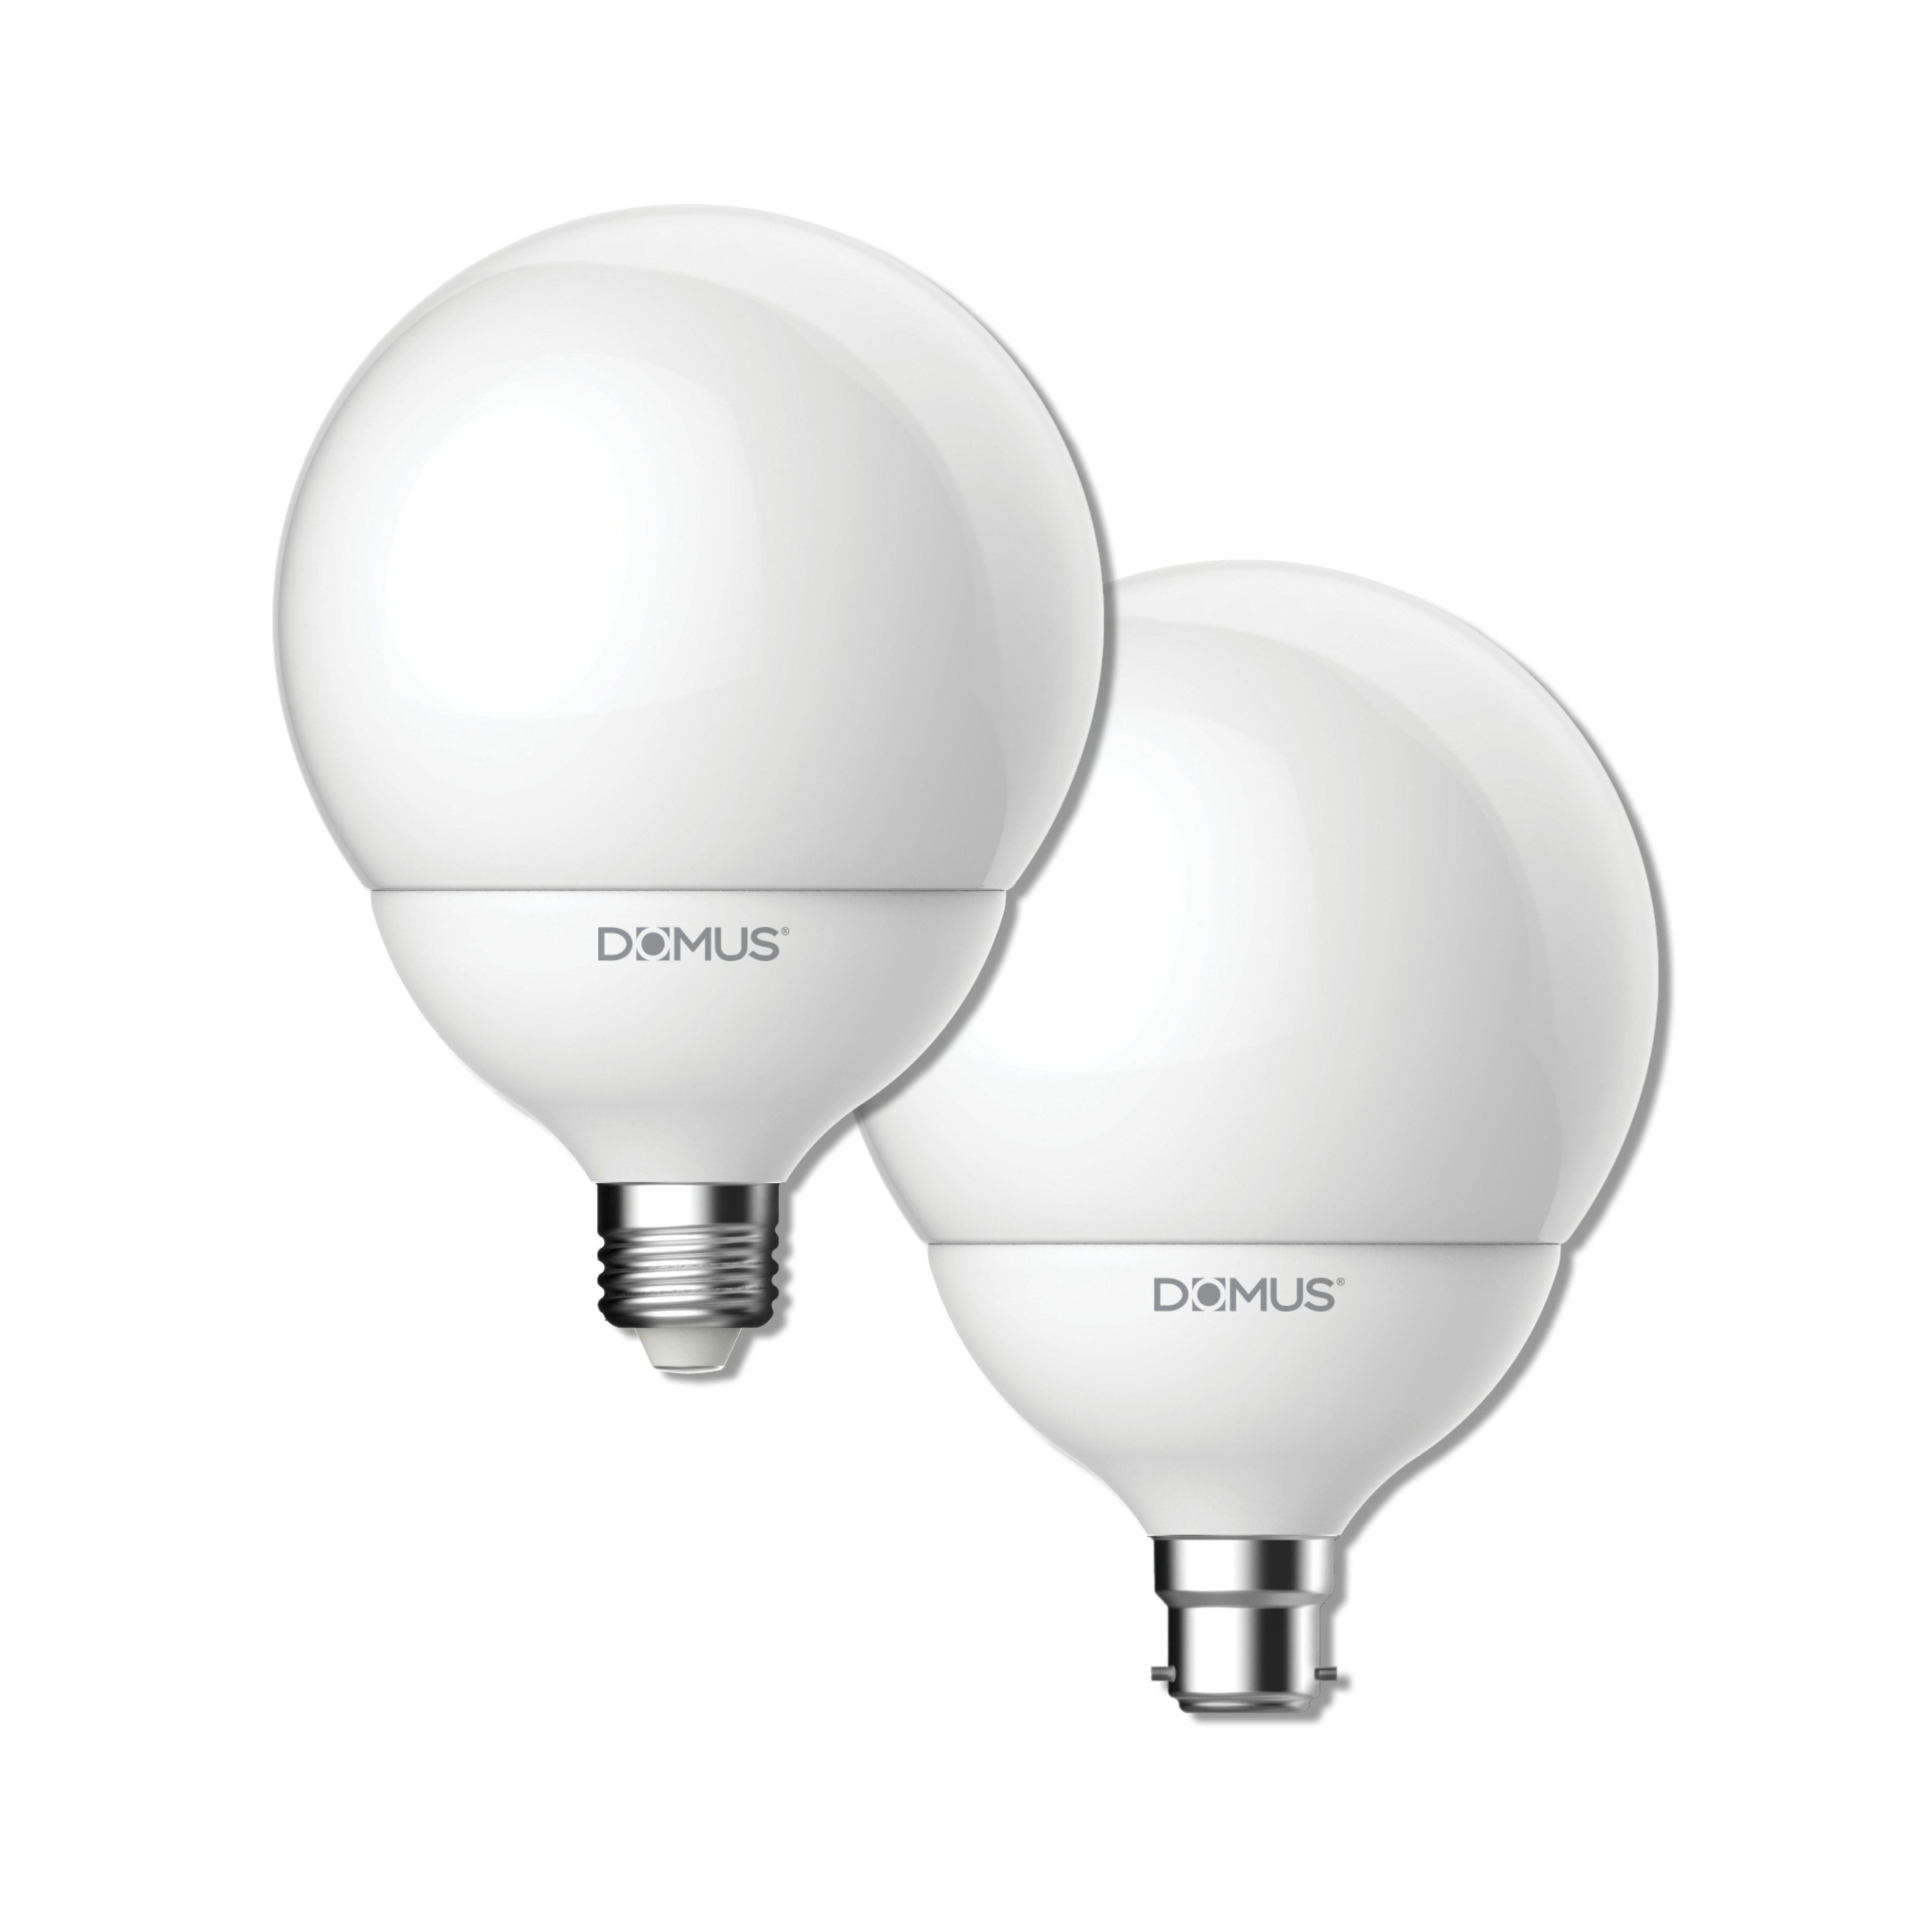 E27-Domus Lighting-Ozlighting.com.au